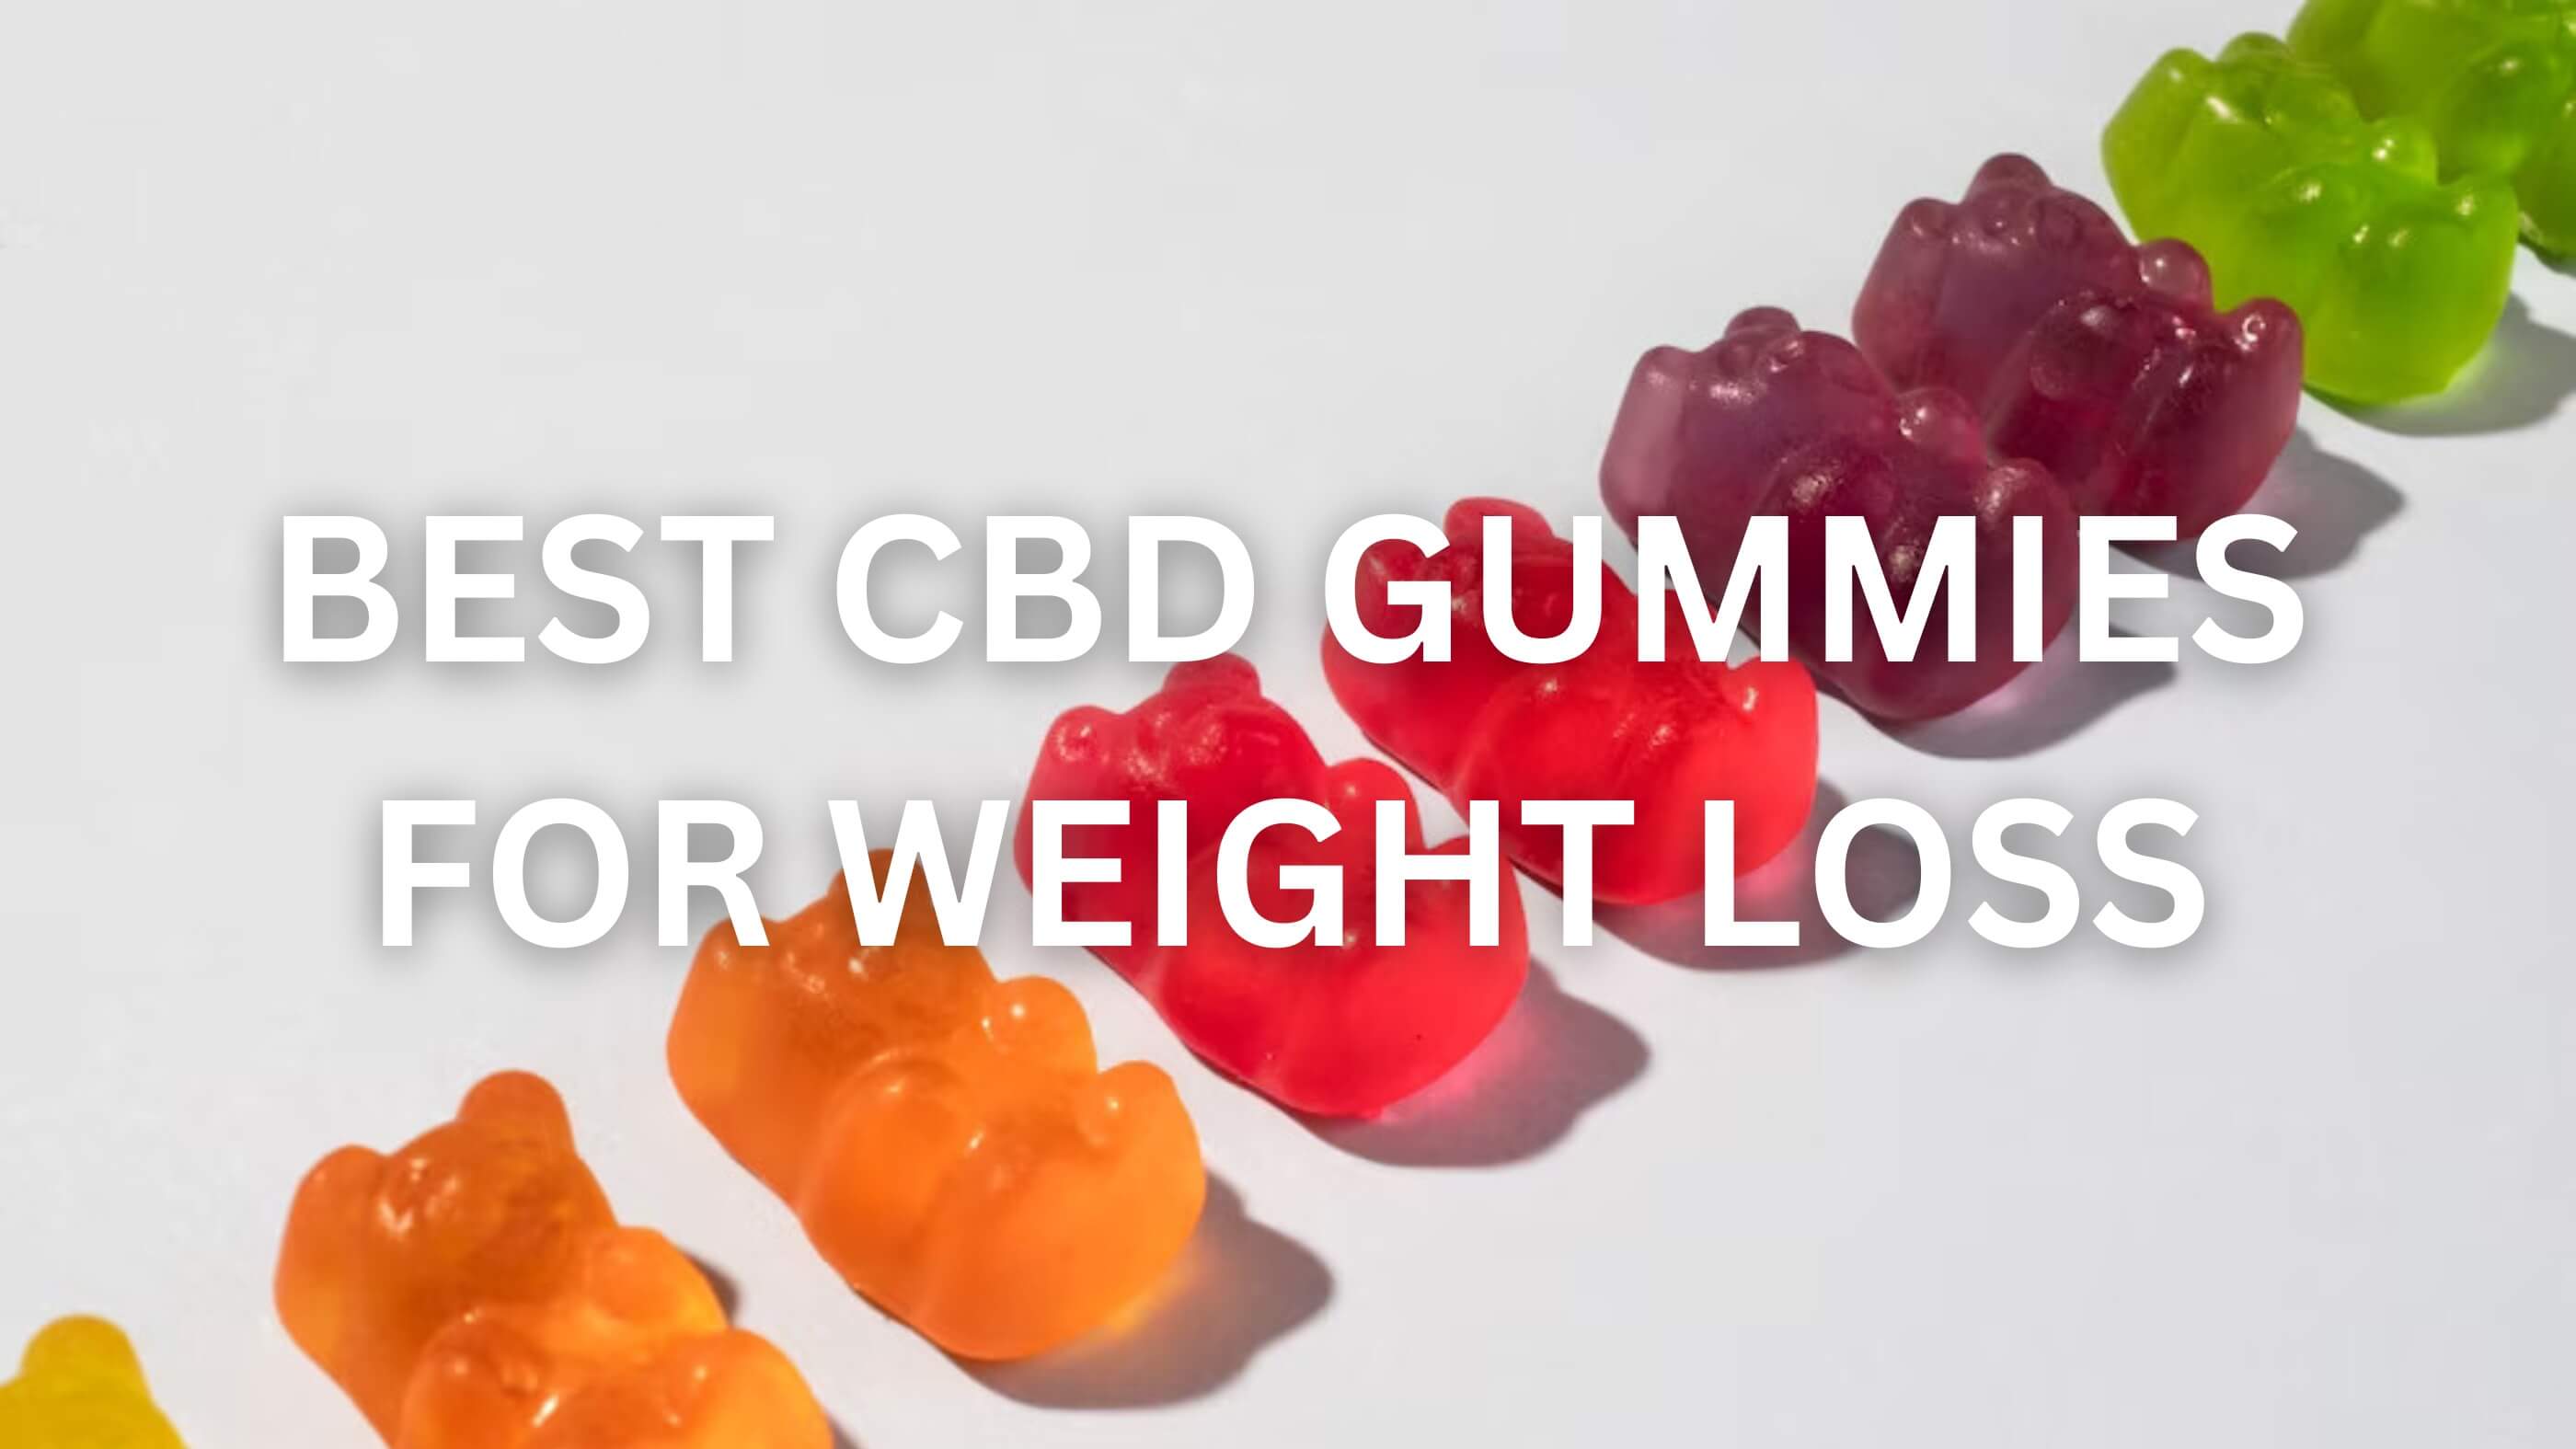 Best CBD Gummies for Weight Loss